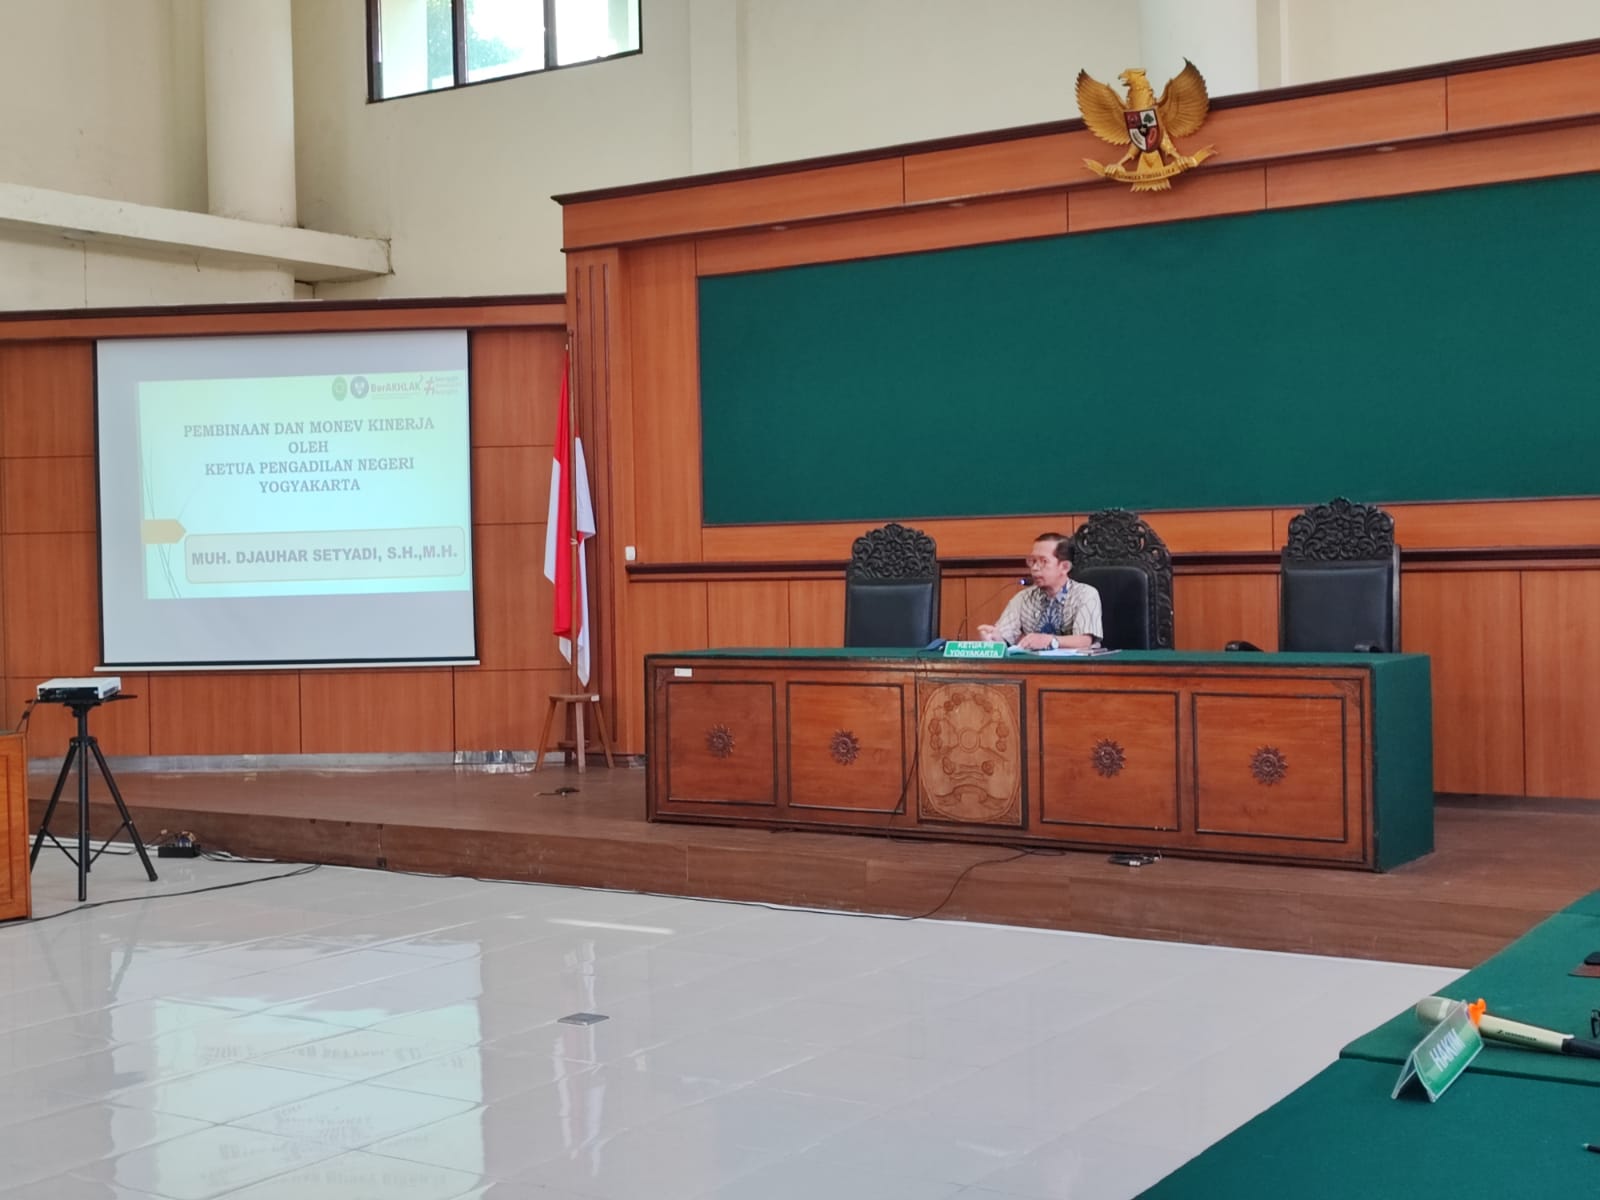 Rapat Pembinaan dan Monev Kinerja Pengadilan Negeri Yogyakarta Juni 2022 